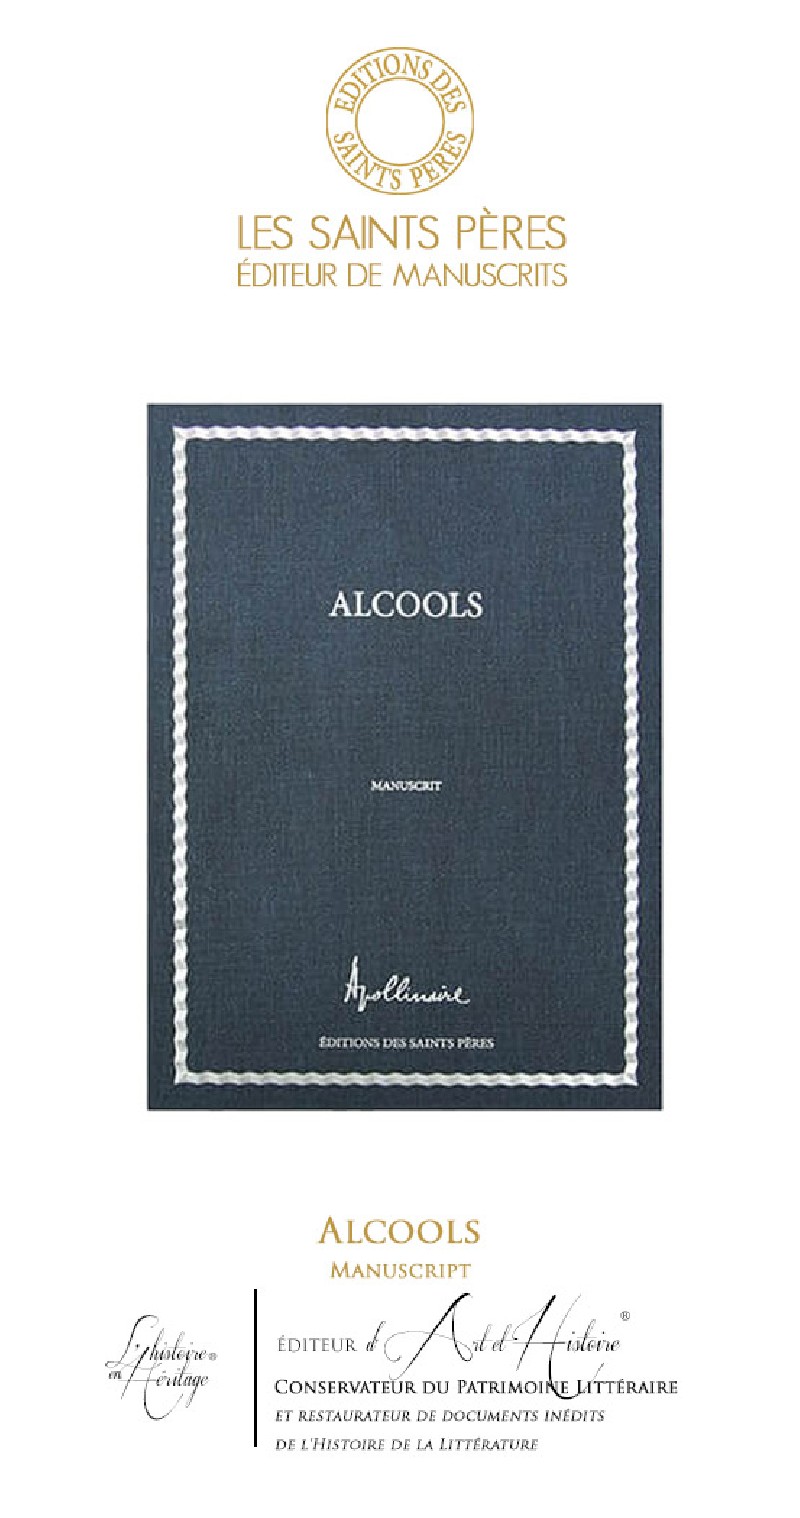 Alcools - Manuscript of History